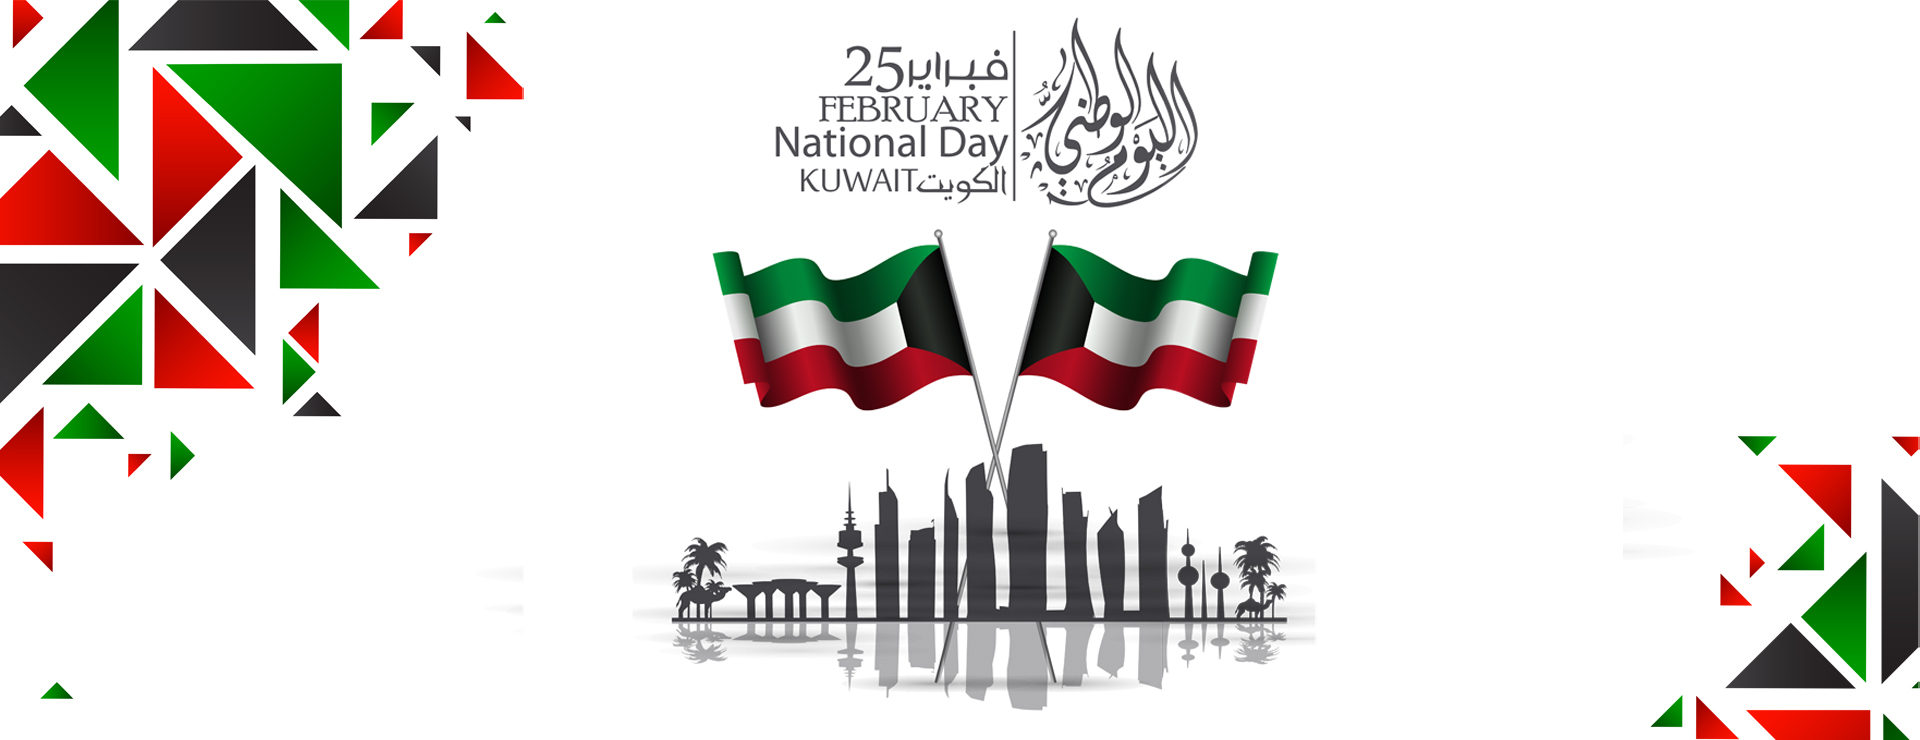 Kuwait National Day Celebration